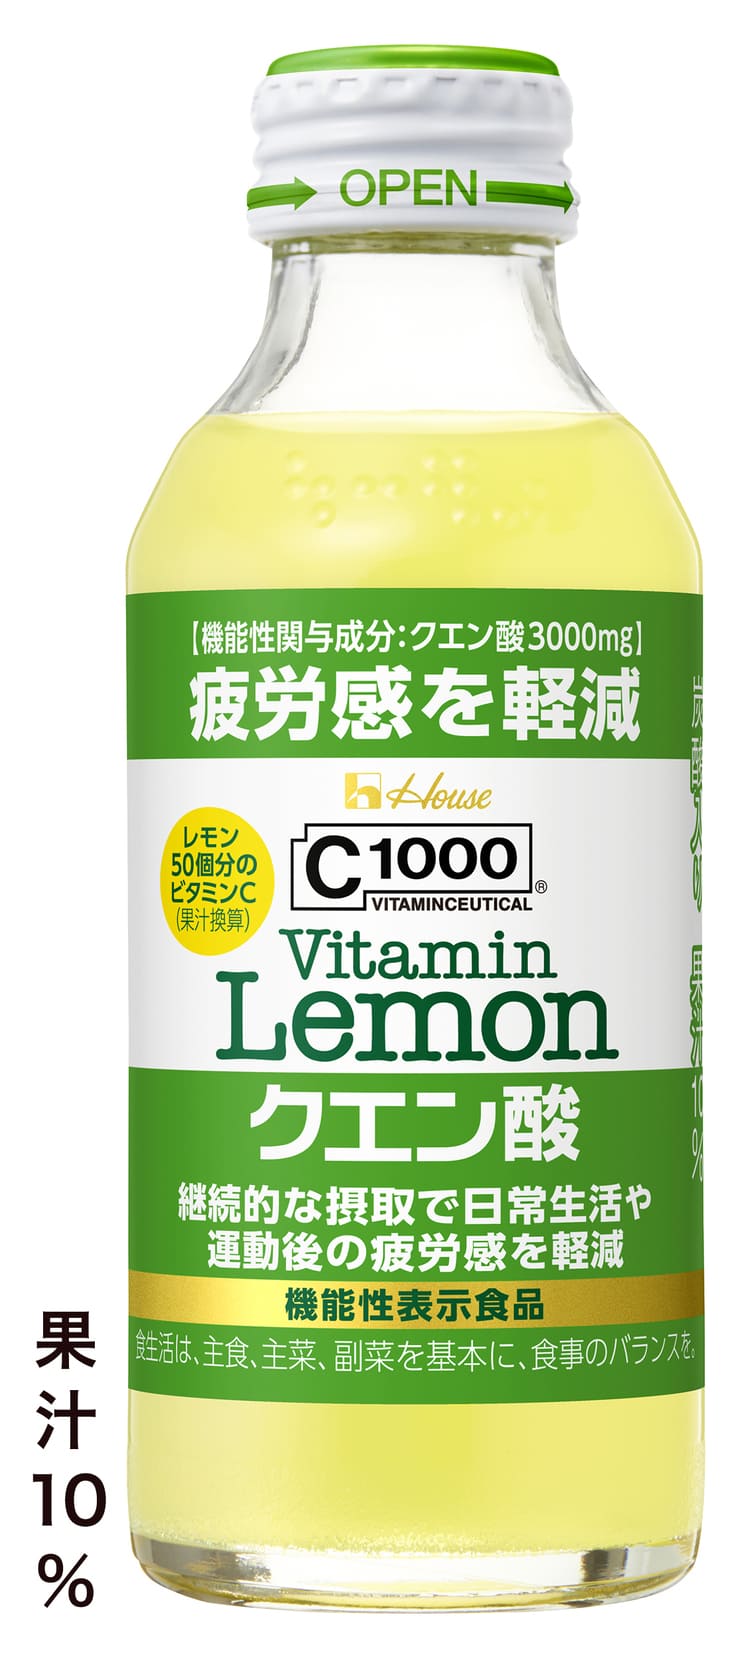 C1000ビタミンレモン クエン酸